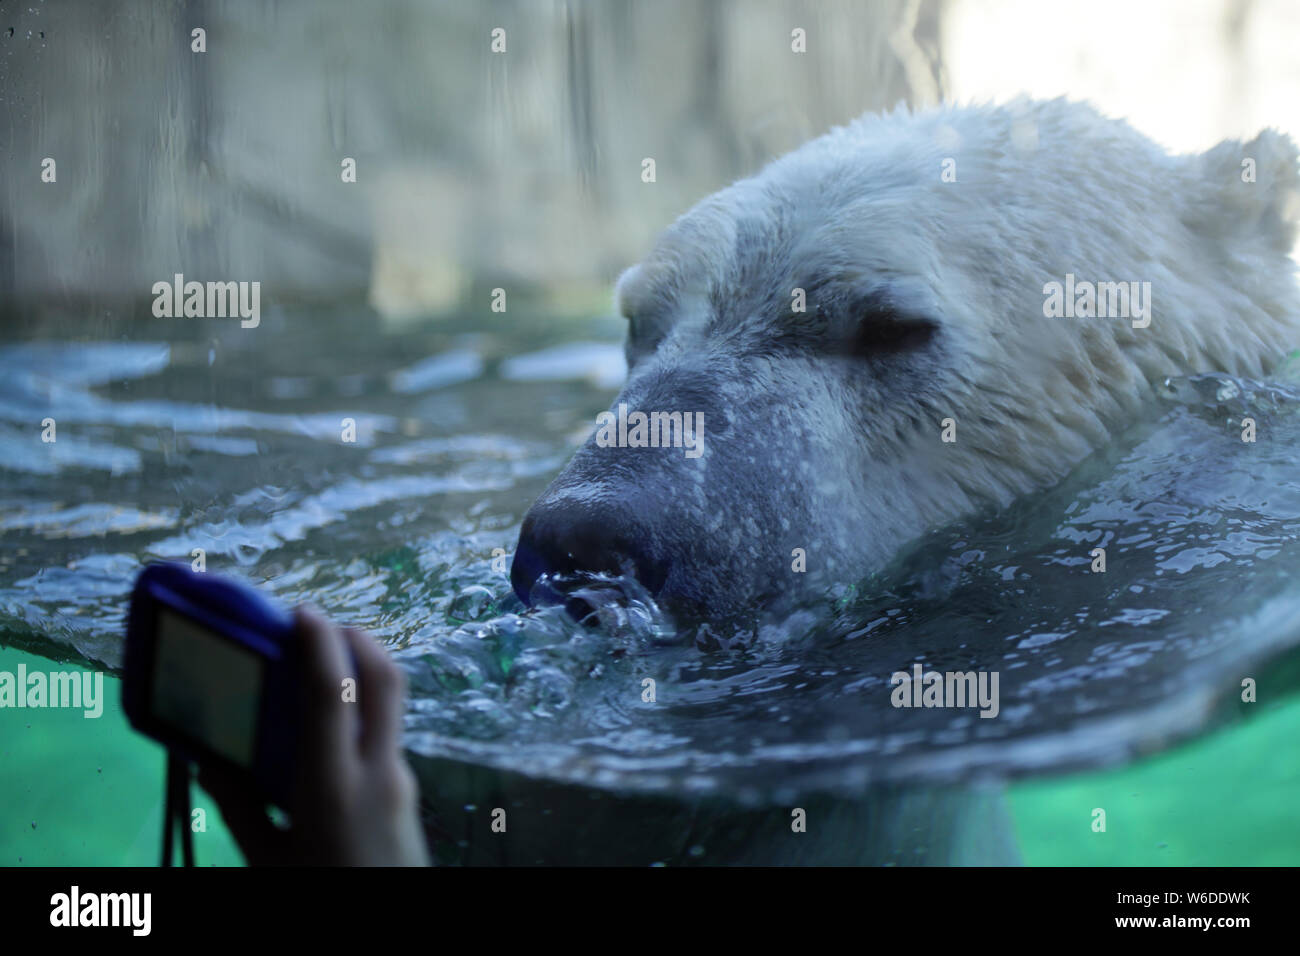 Un oso polar en cautiverio: ¿ayudan o impiden la conservación? ¿Fantástico Instagram post con imágenes de cierre contribuyen a nuestro entendimiento th Foto de stock